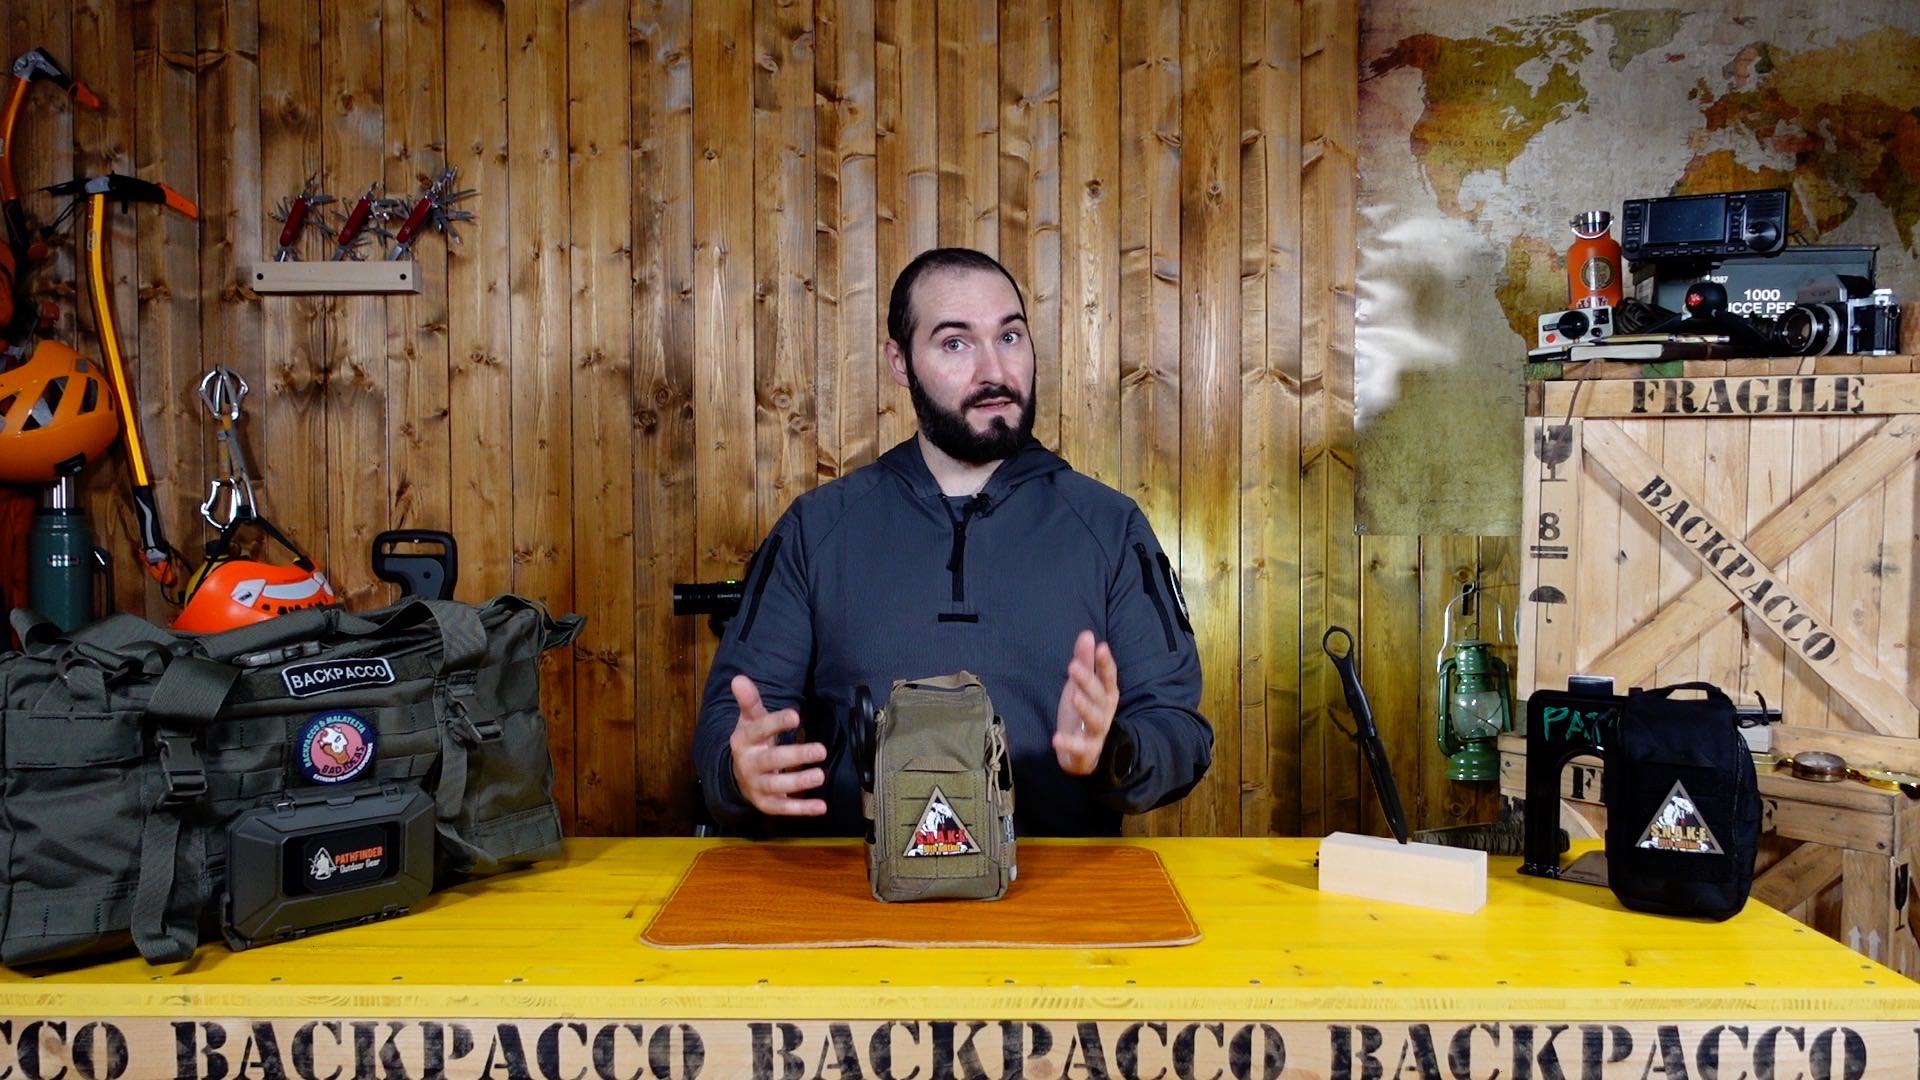 COPERTINA DEL VIDEO DOVE PAOLO DI BACKPACCO SPIEGA LA POUCH UCR IFAK DI 5.11